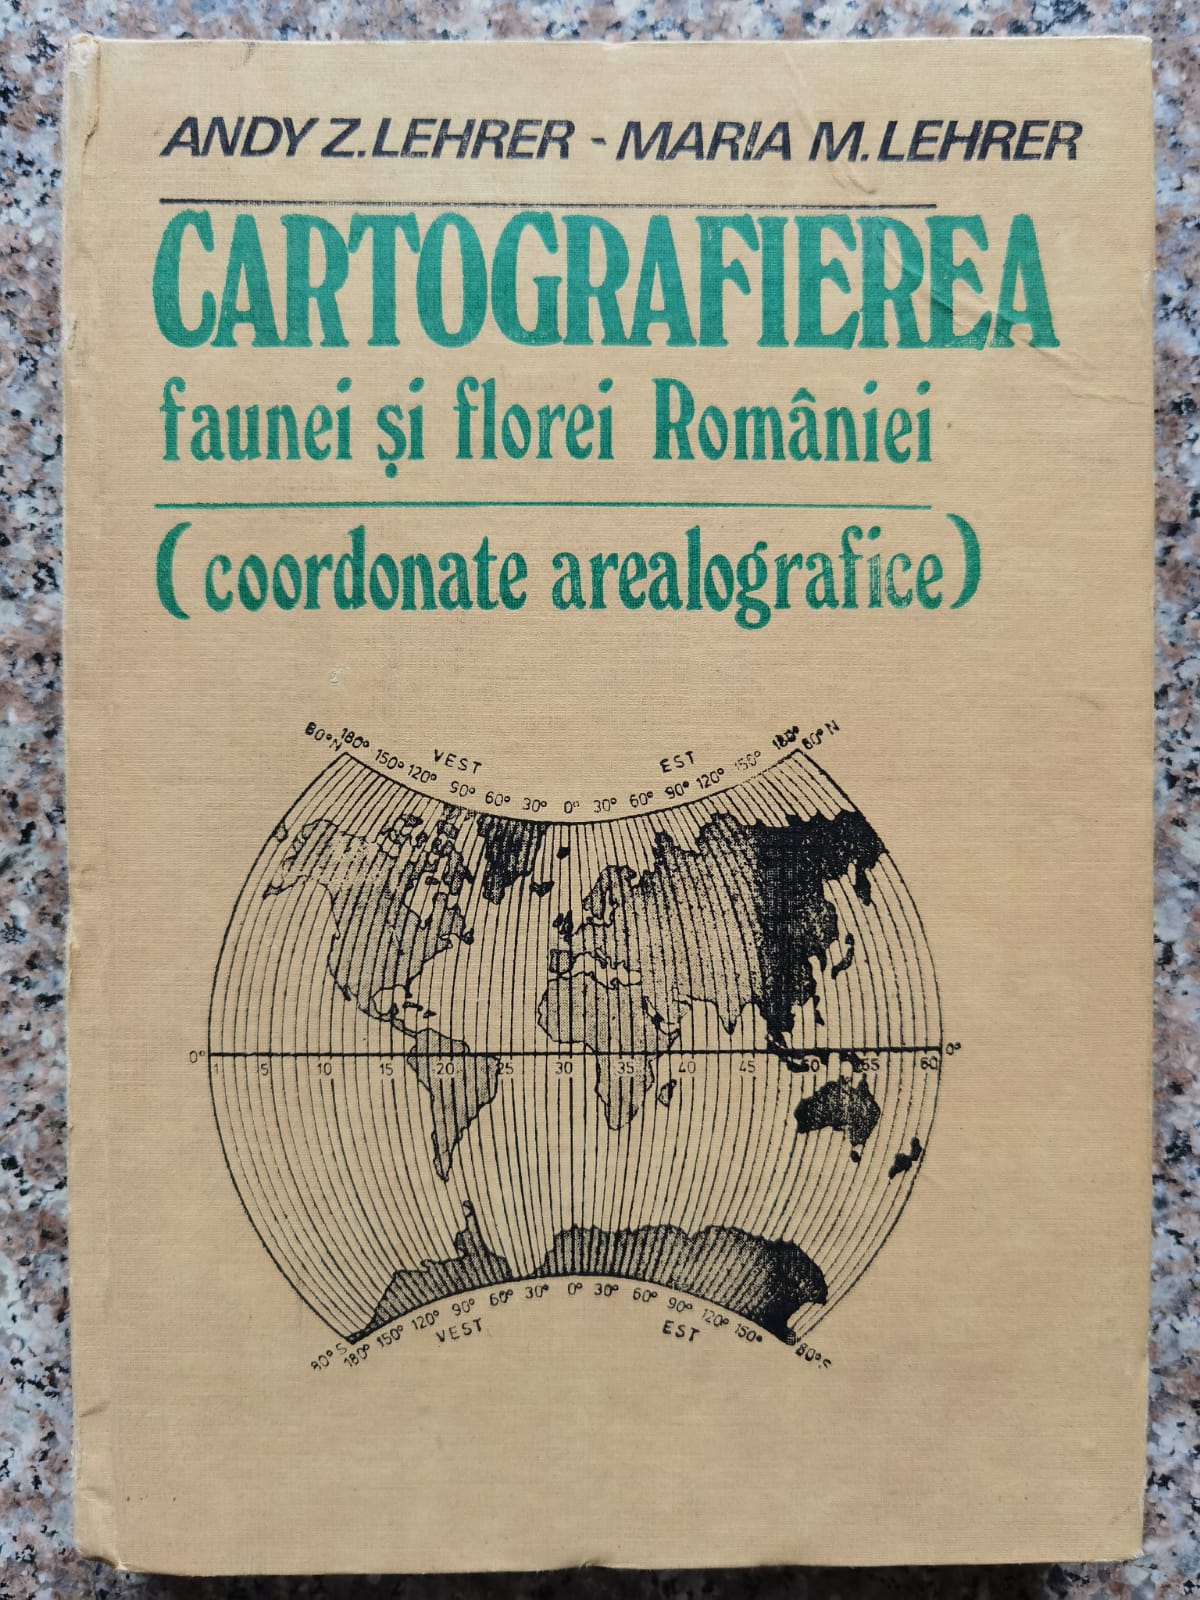 cartografierea faunei si florei romaniei                                                             andy z. lehrer   maria m. lehrer                                                                    